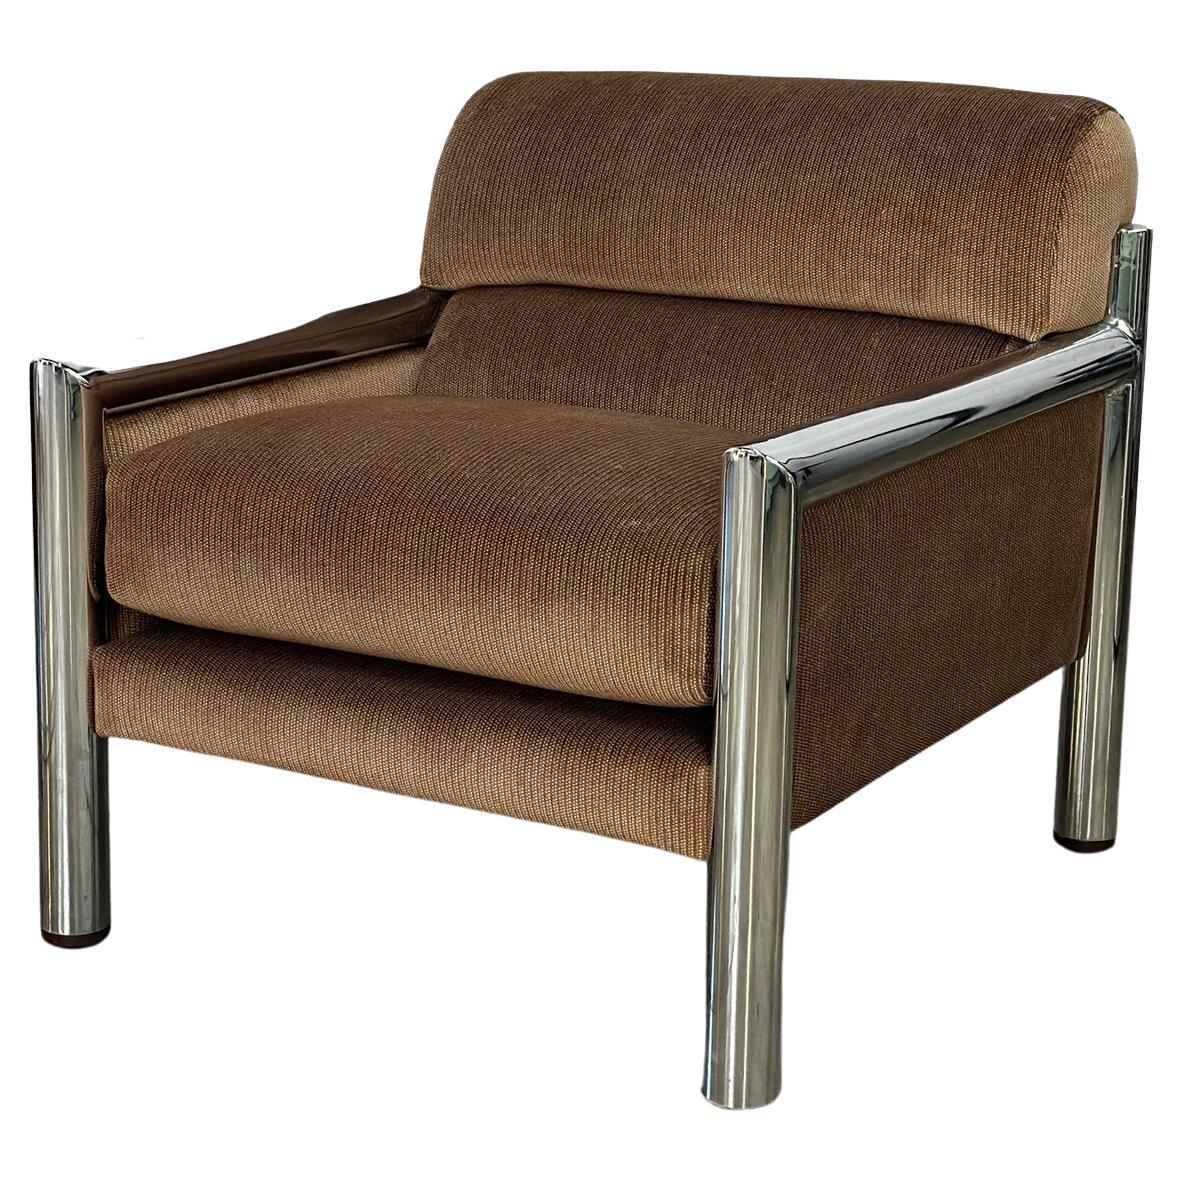 Chrome tubular lounge chair For Sale